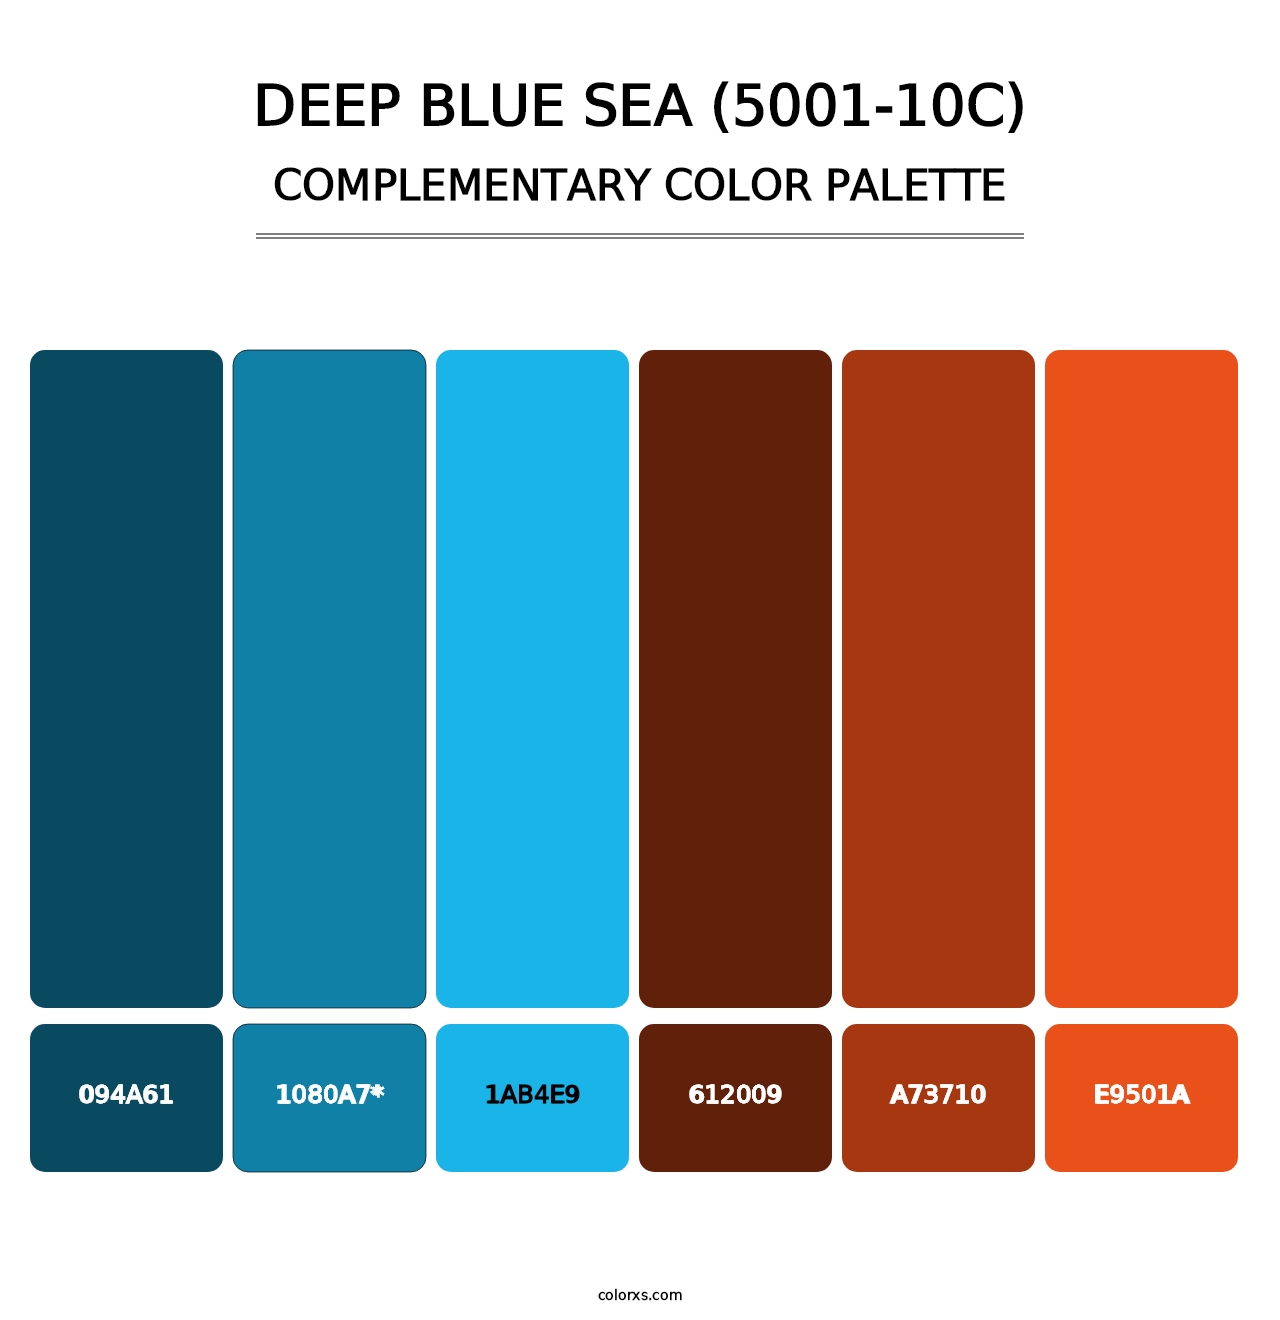 Deep Blue Sea (5001-10C) - Complementary Color Palette